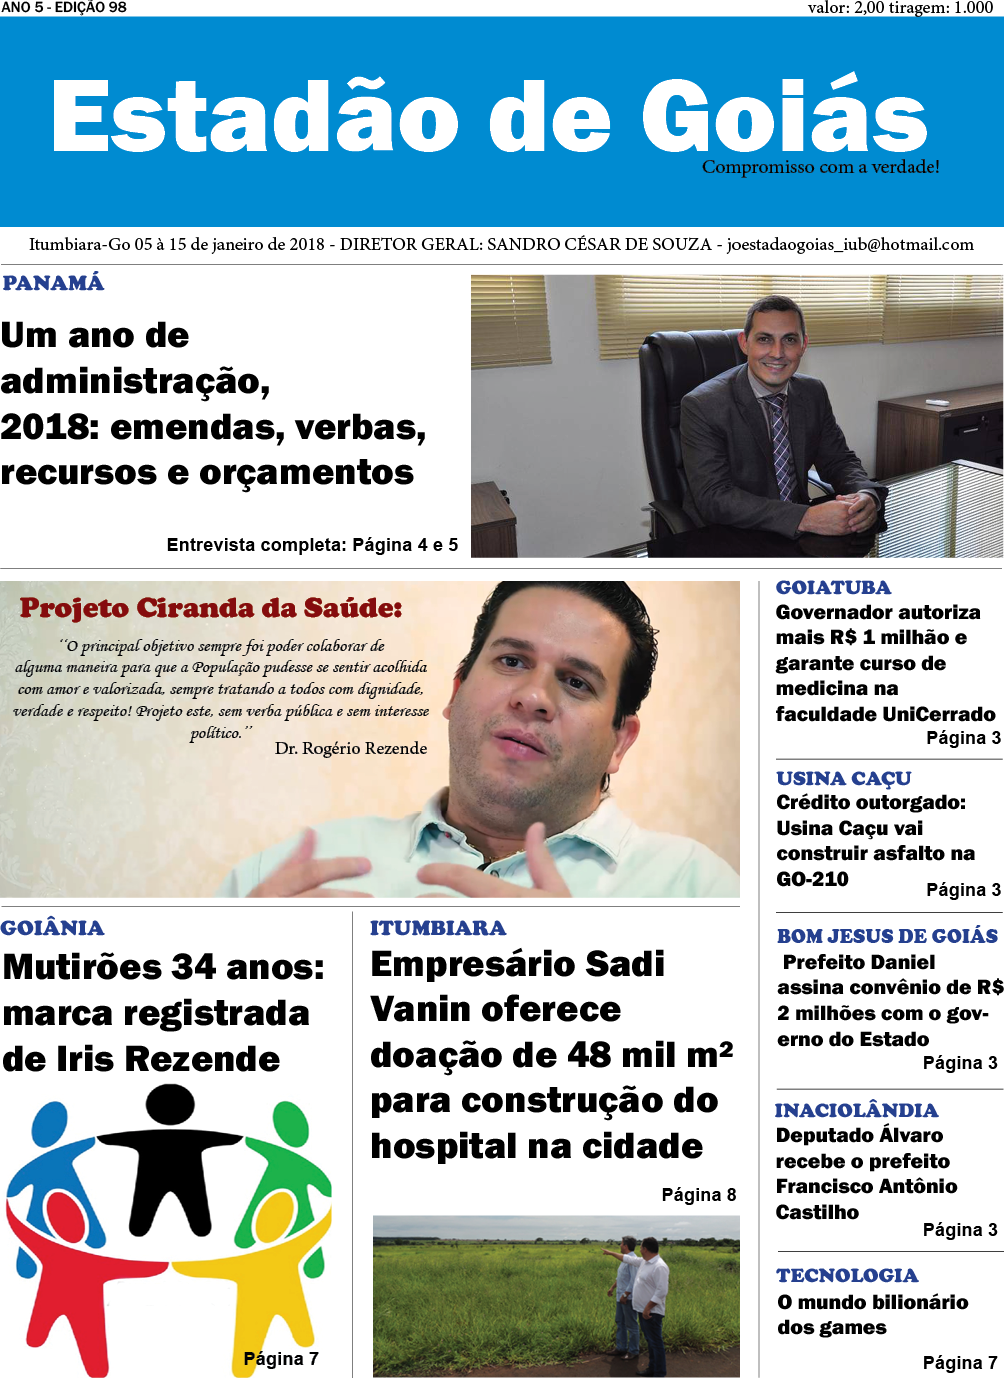 Jornal Estadão de Goiás edição 98